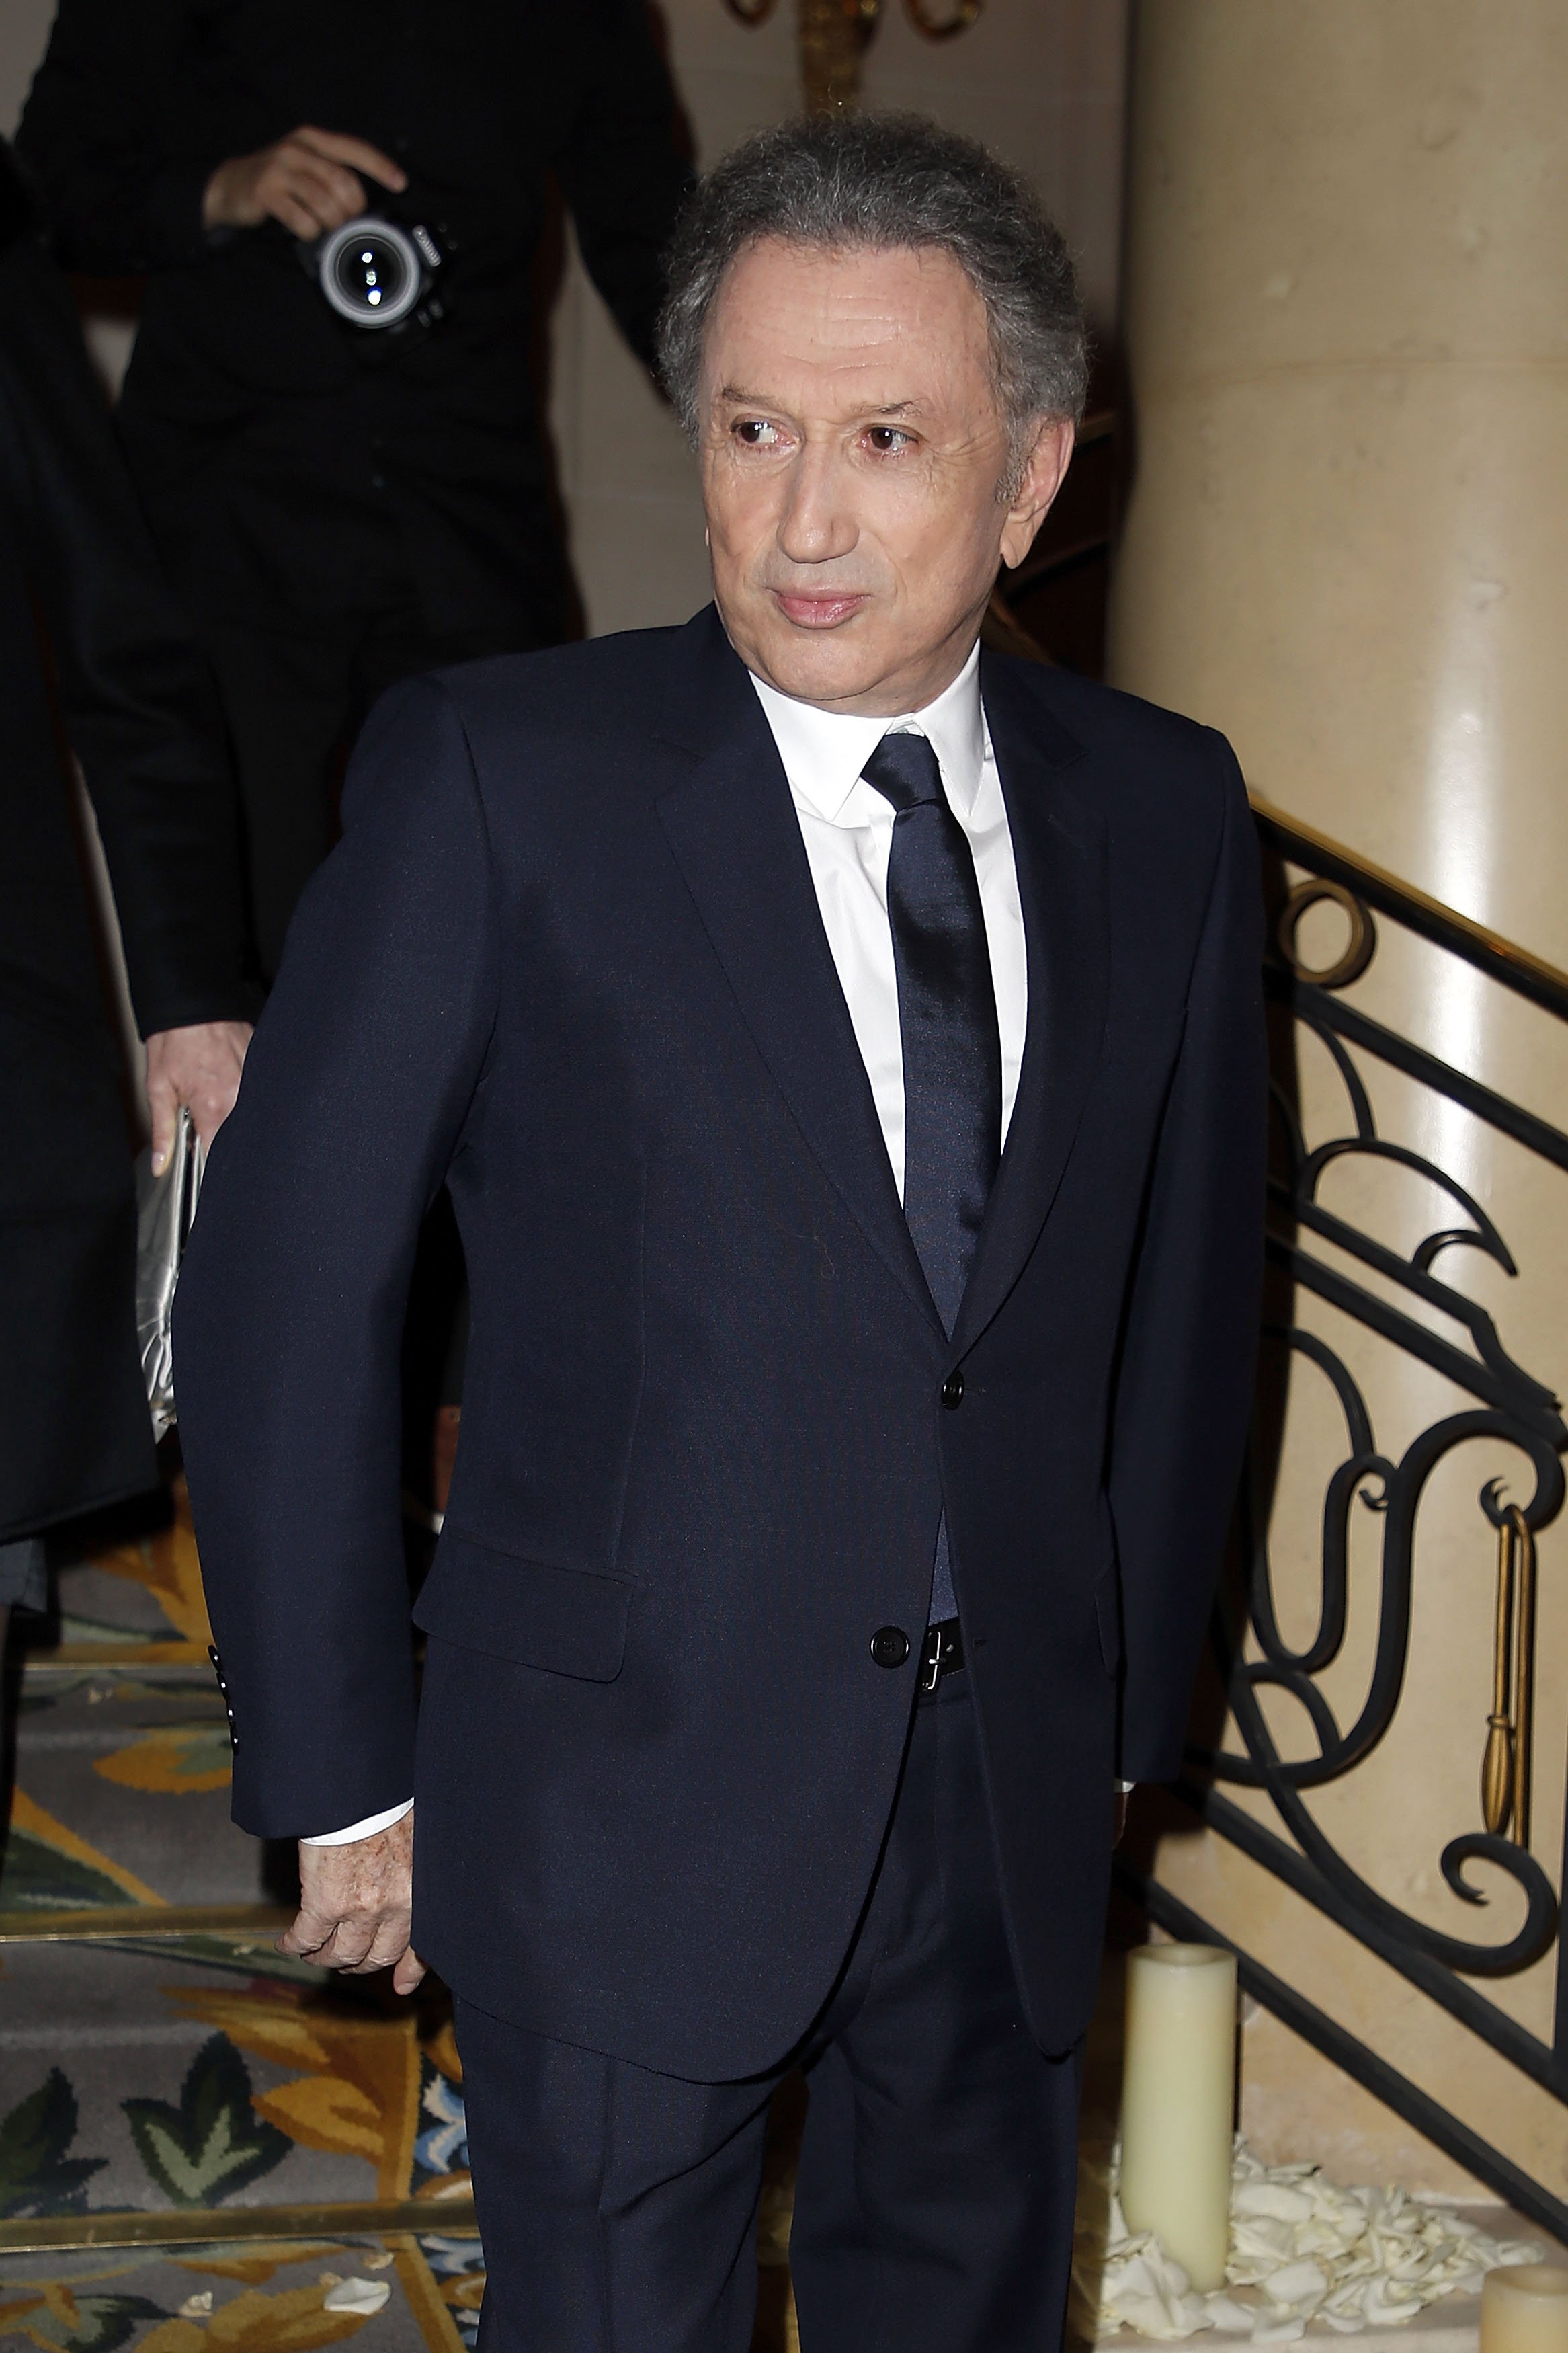 Michel Drucker assiste au Gala de bienfaisance de "La Recherche en Physiologie" au Four Seasons Hotel George V le 13 mars 2017 à Paris, France. | Photo : Getty Images